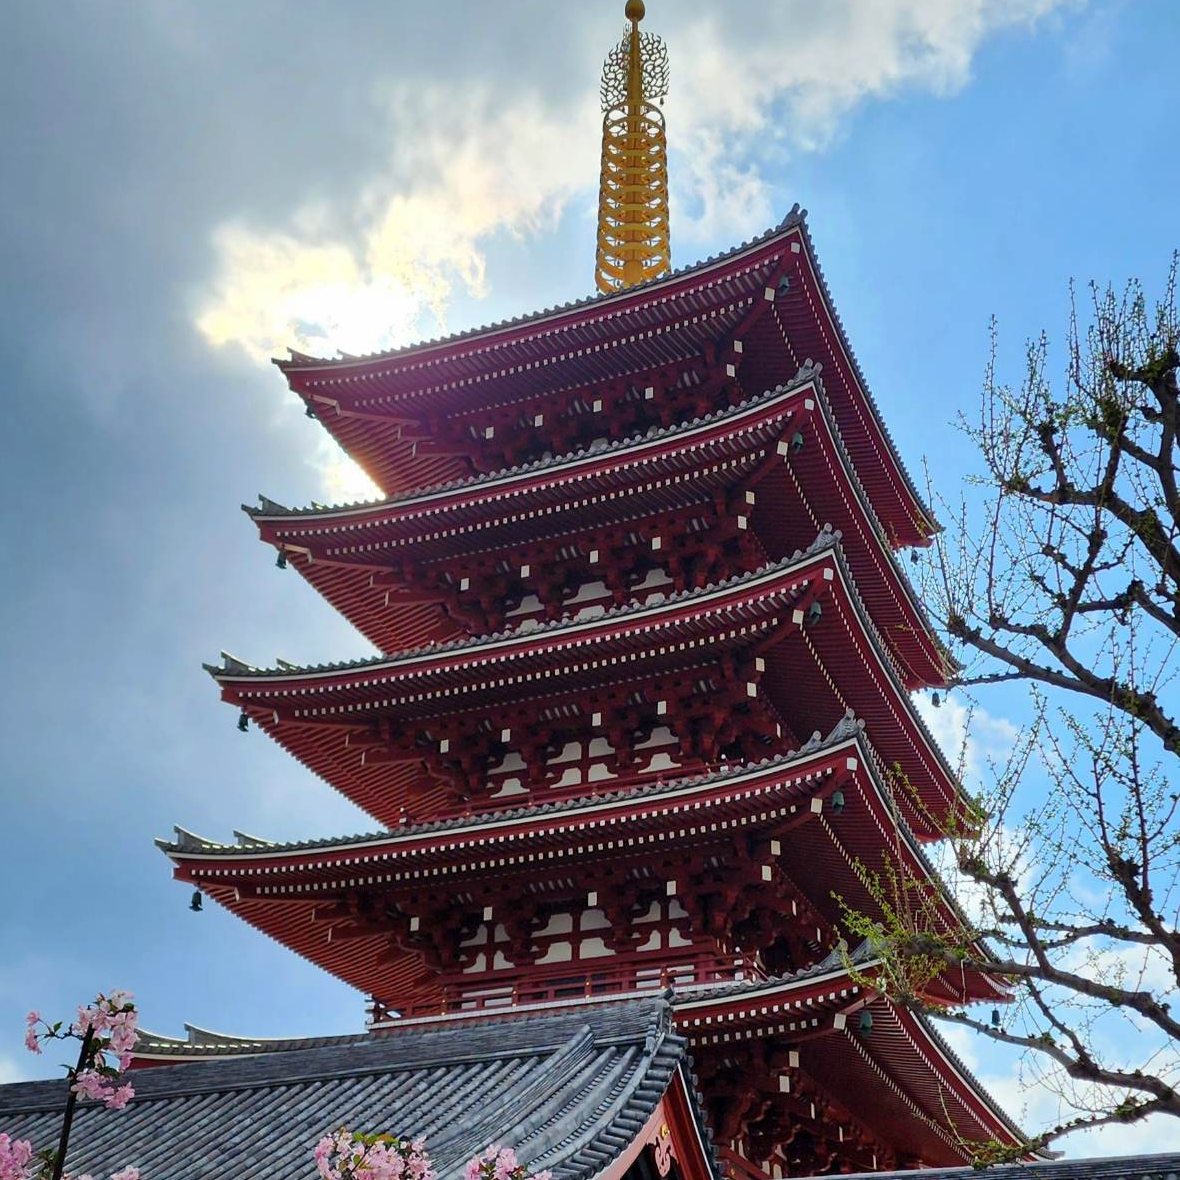 Japanese Pagoda Tea Cosy